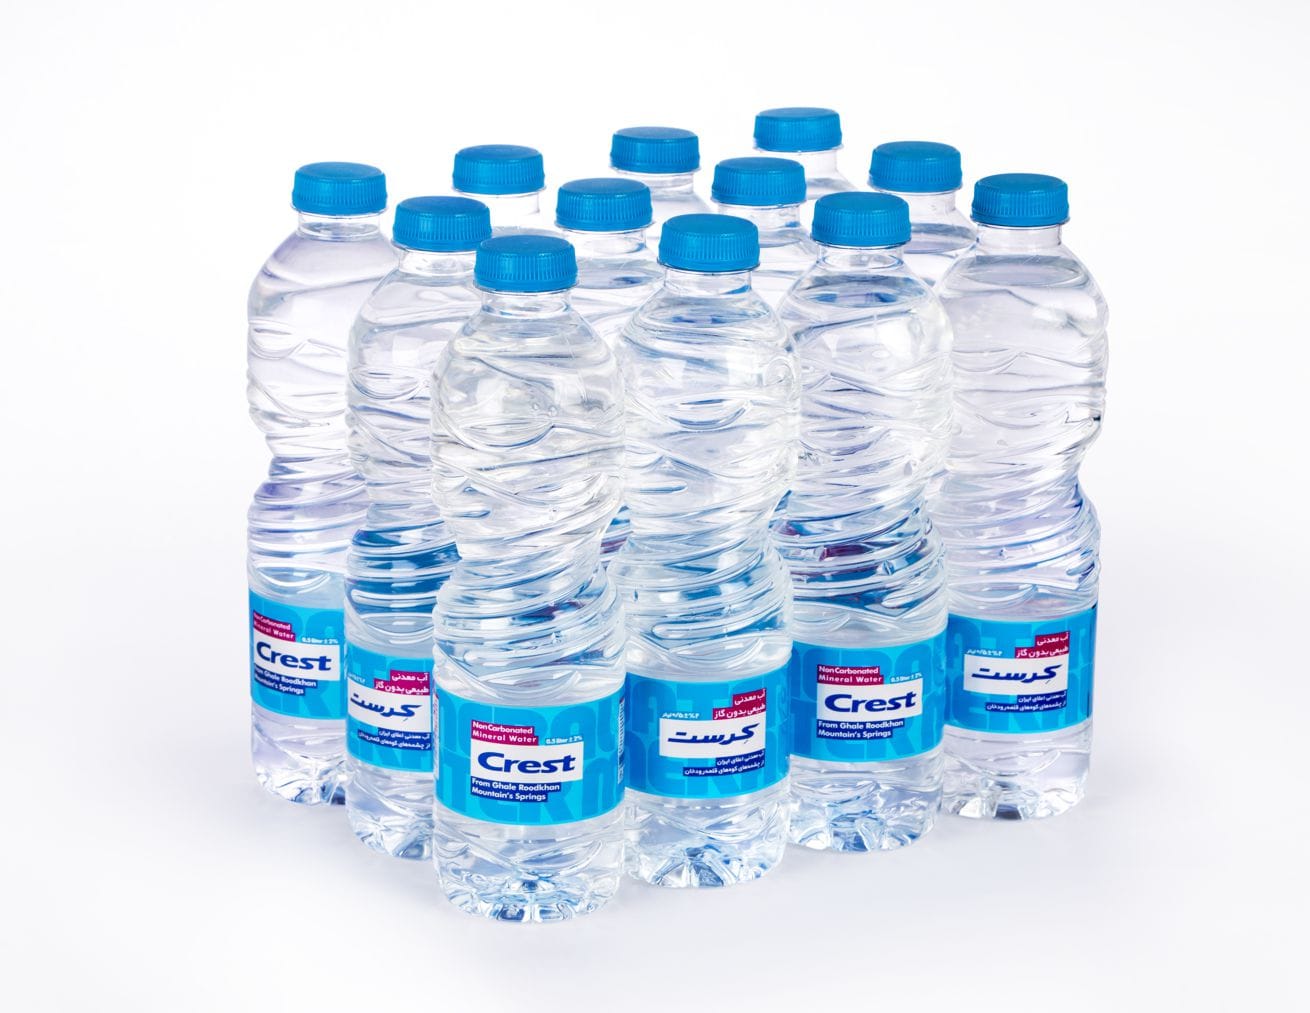 Продажа воды в бутылках. Питьевая вода в бутылках. Бутылка для воды. Упаковка бутилированной воды. Минеральные воды.